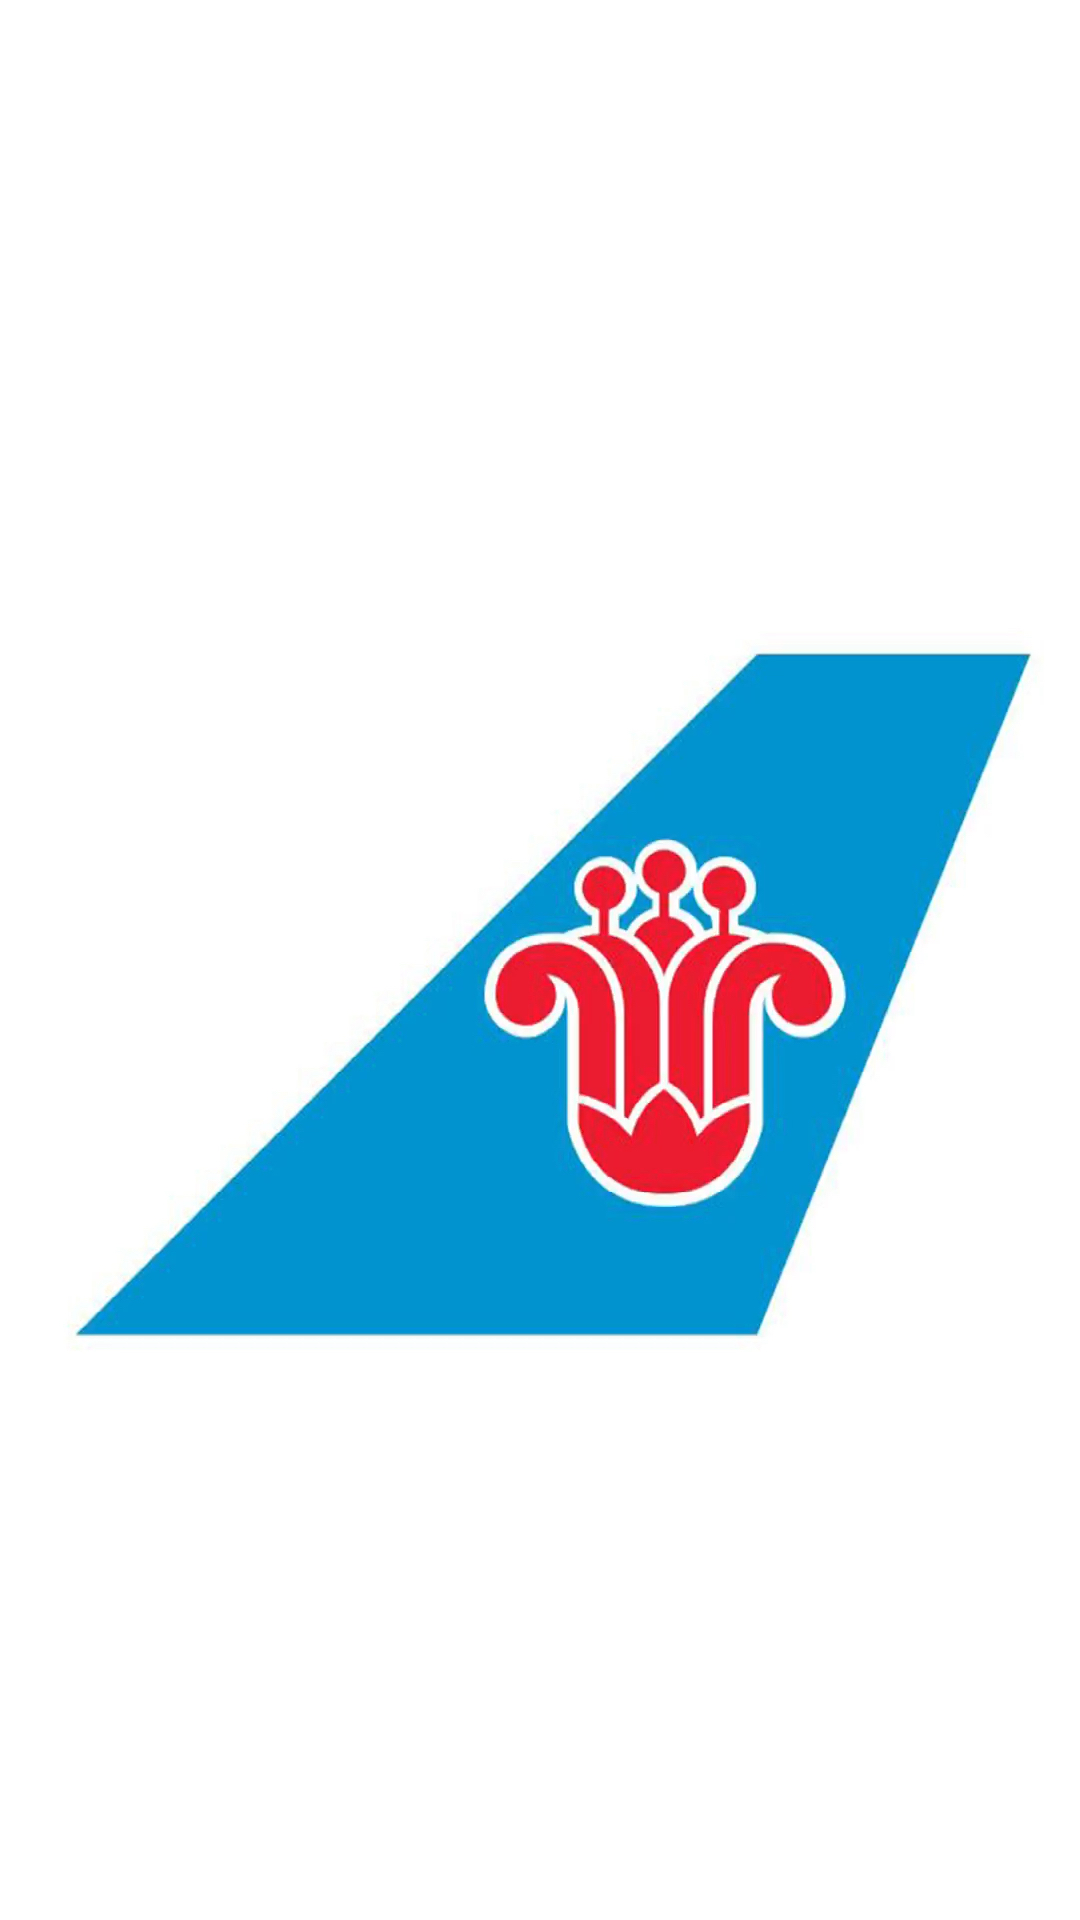 南方航空logo高清图图片